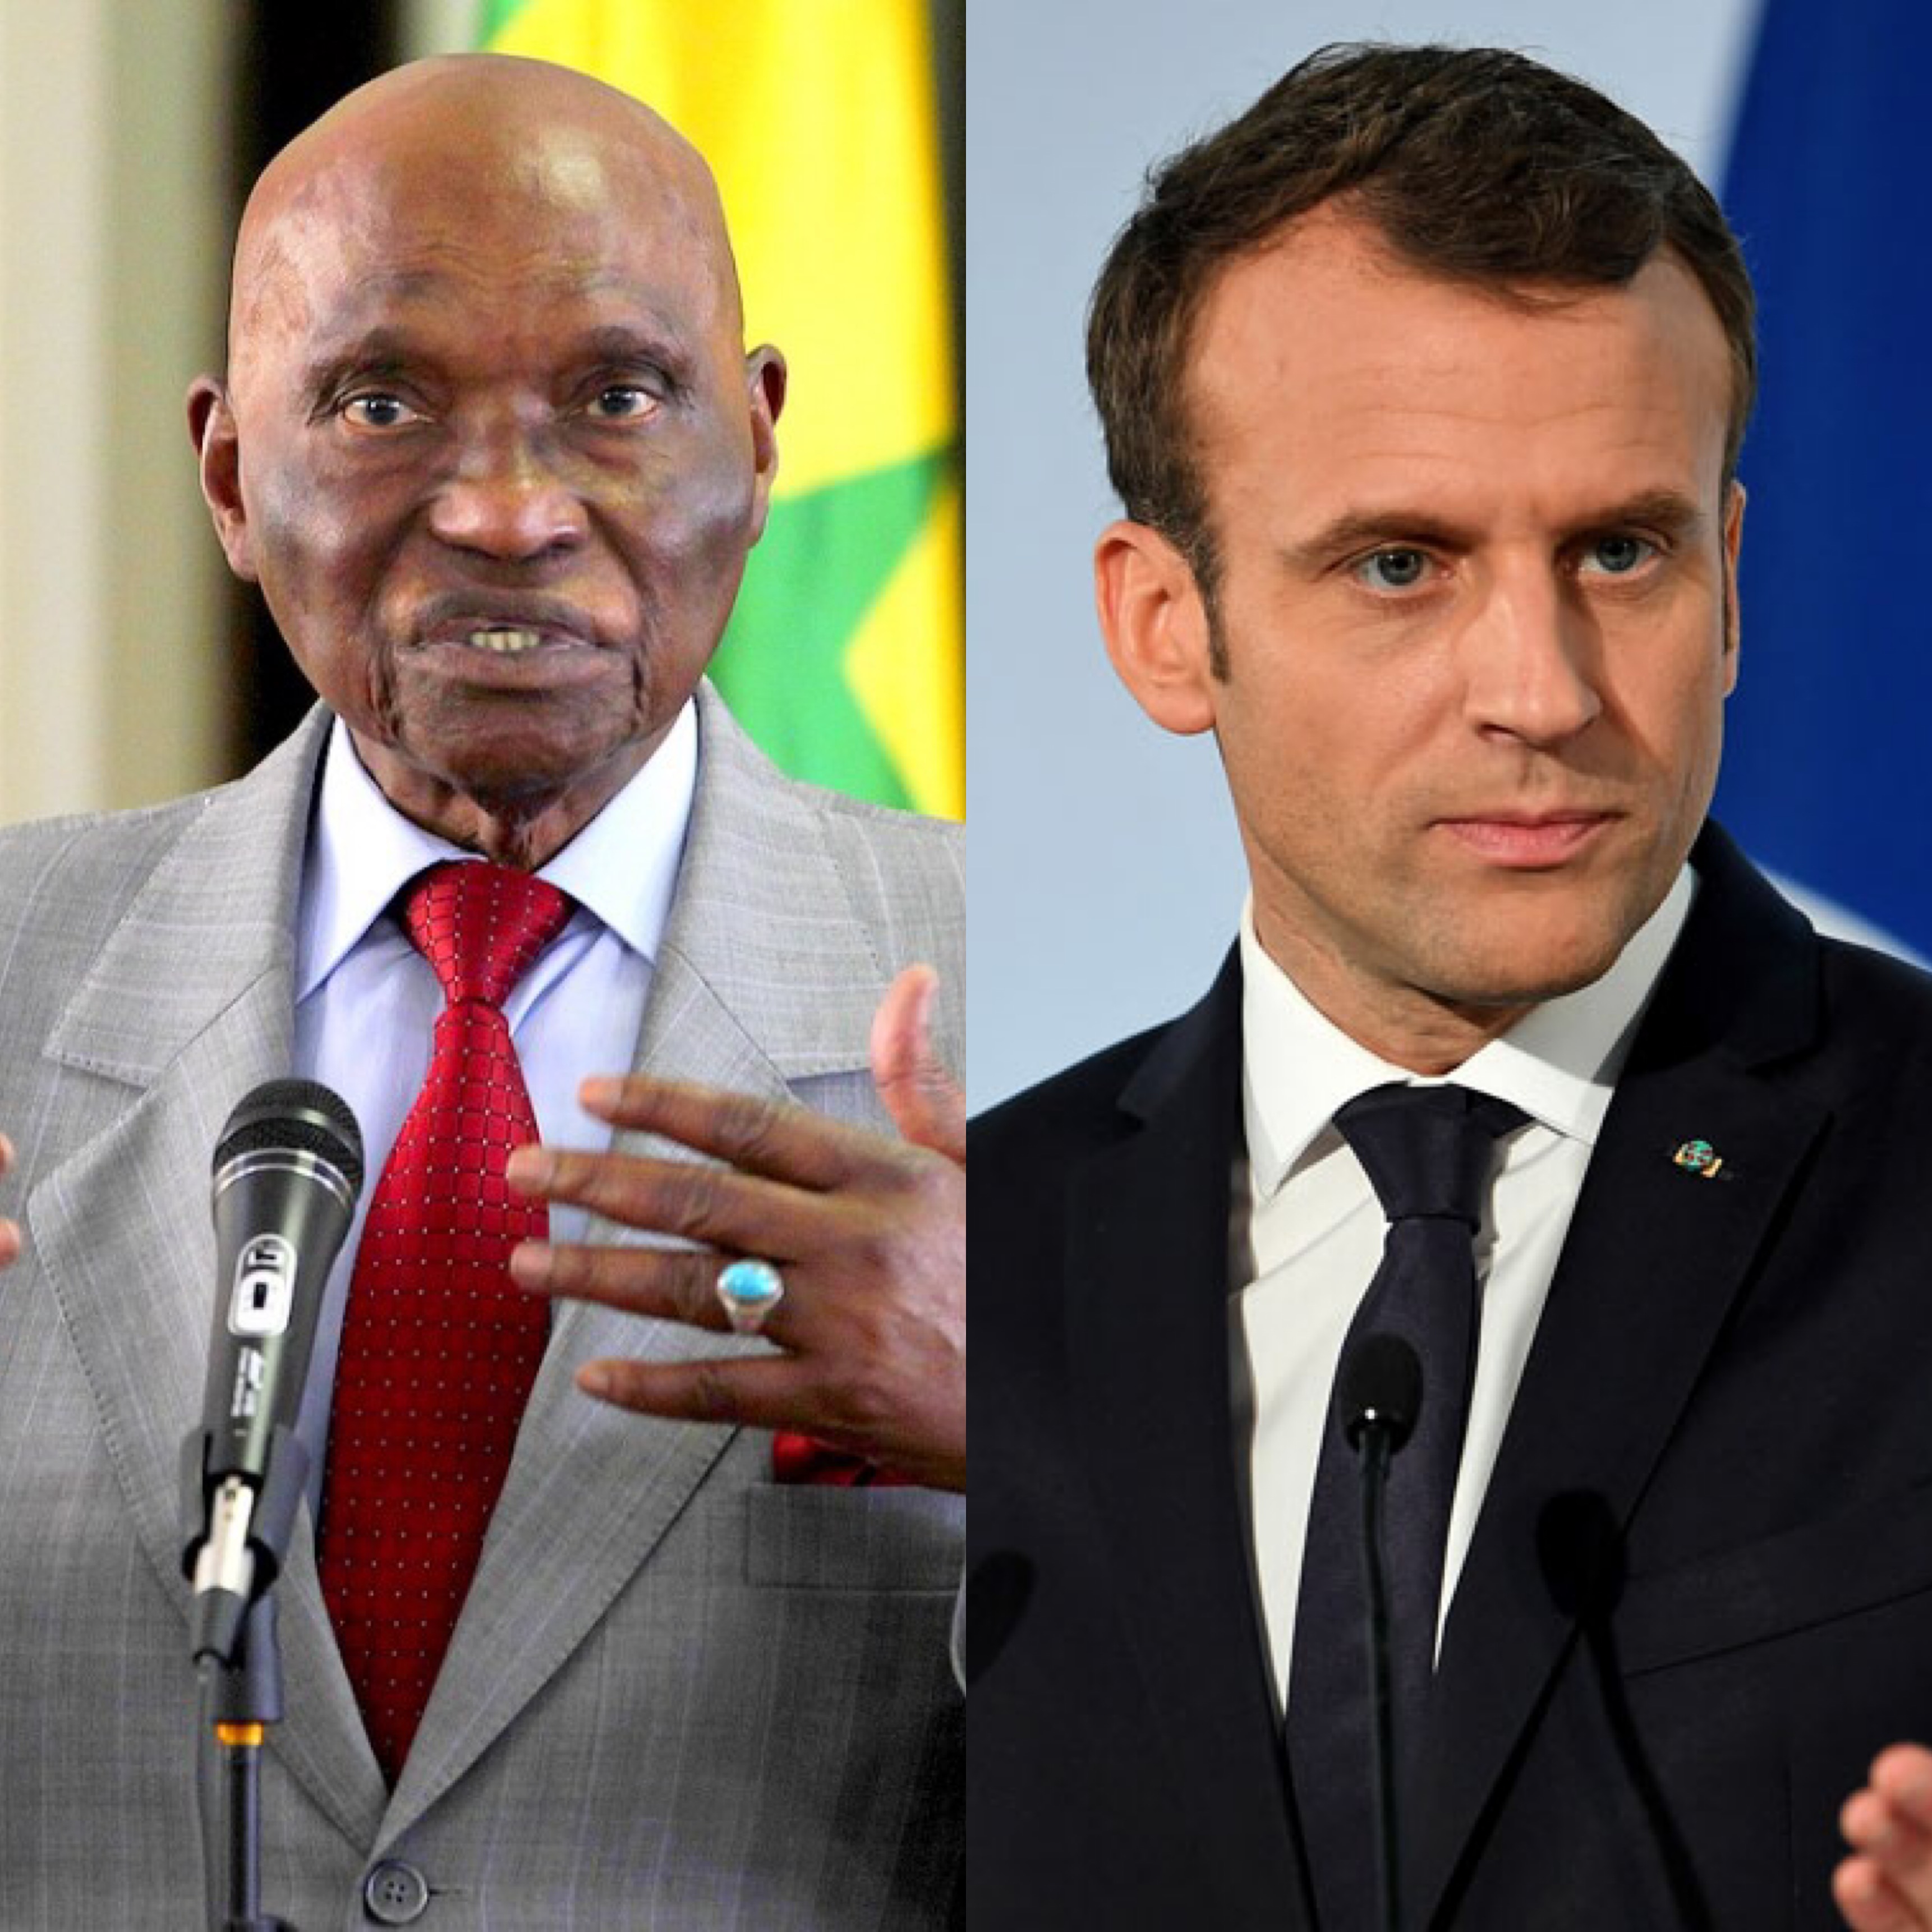 VISITE OFFICIELLE AU SENEGAL : Me Abdoulaye Wade écrit au Président Emmanuel Macron